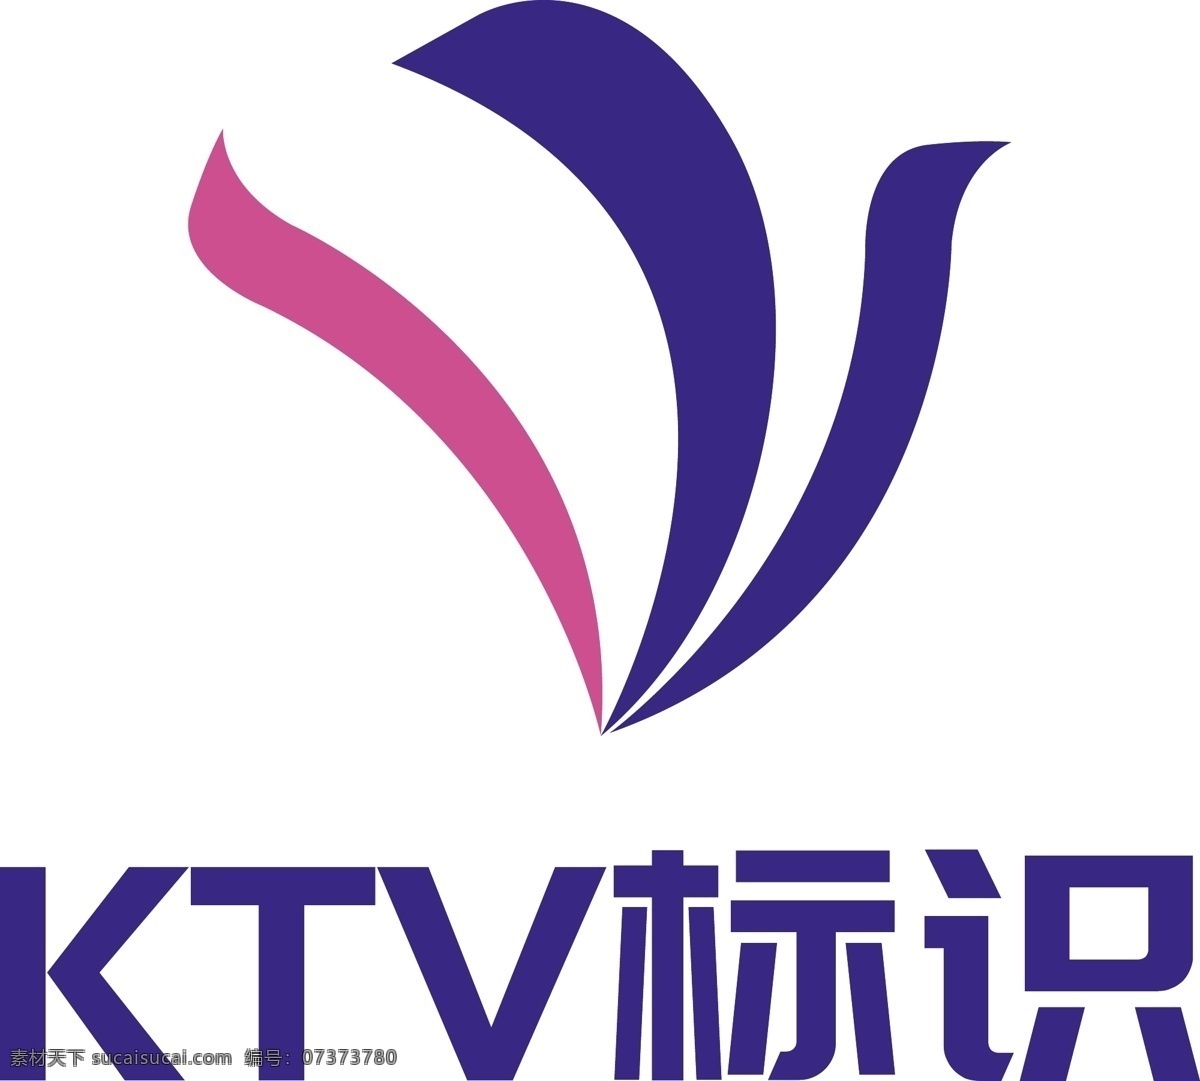 唯美 ktv 图形 logo 标志 唯美ktv ktv标志 休闲 娱乐